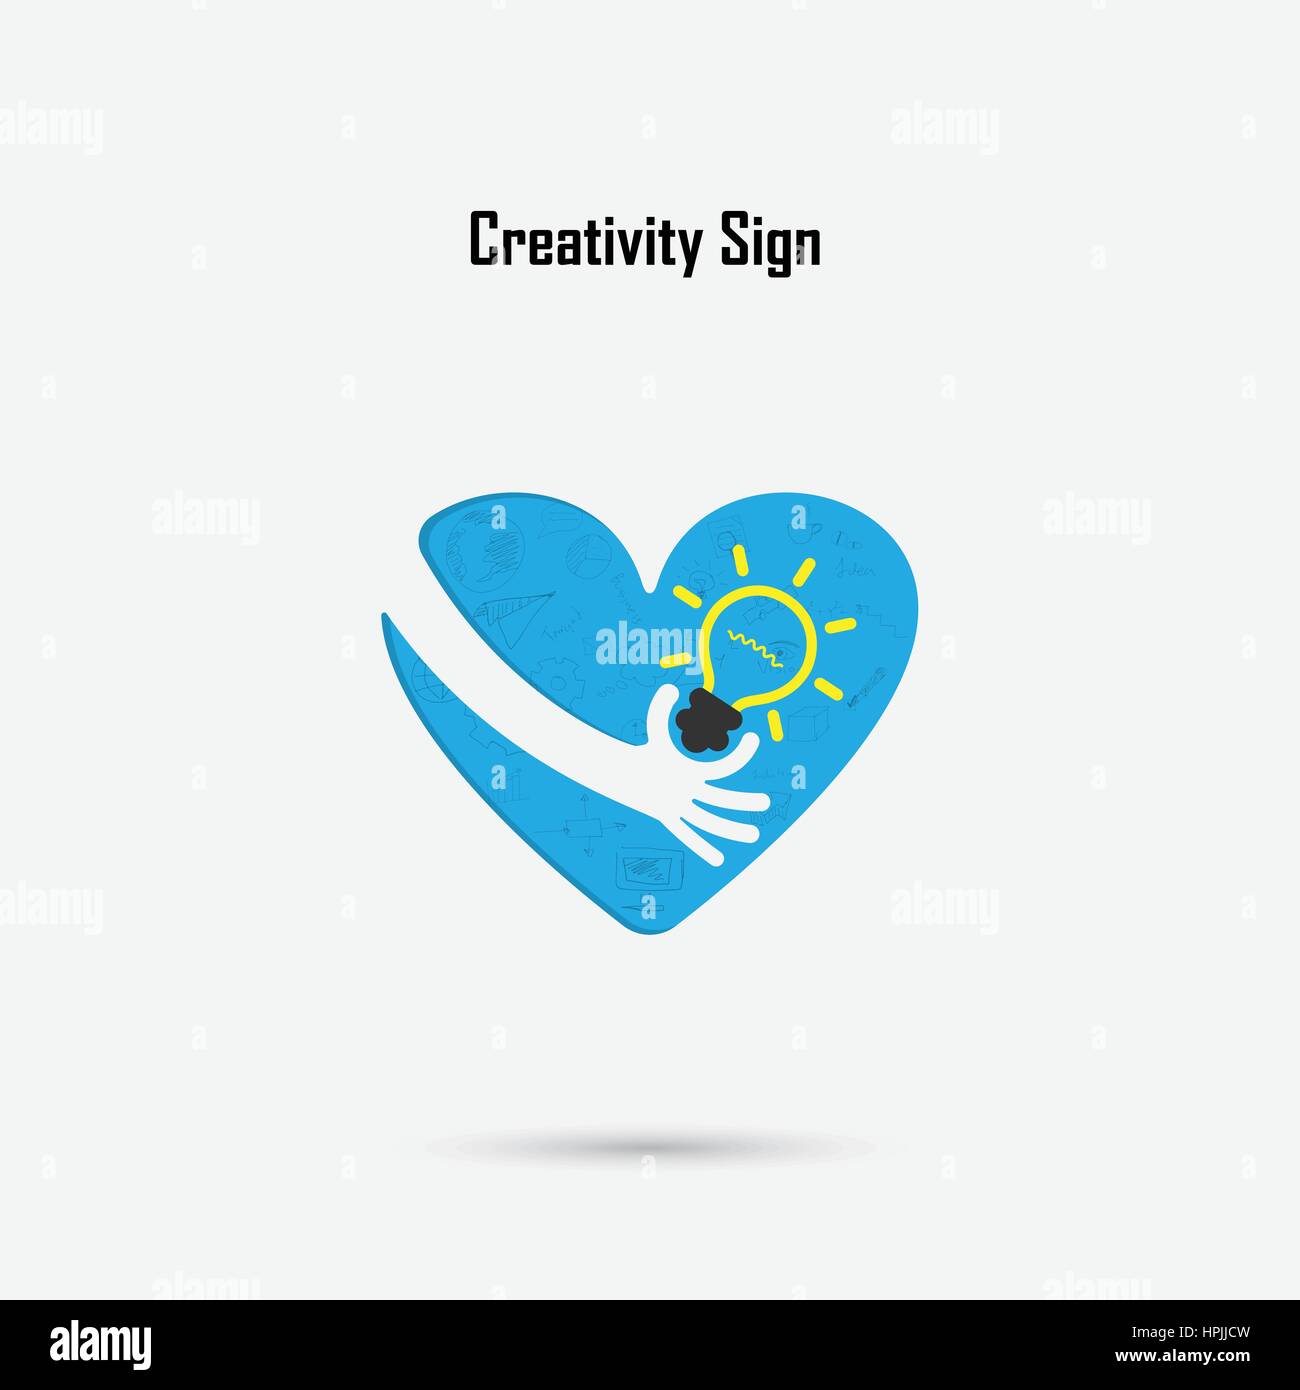 Menschliche Hand, Glühbirne und Herz-Logo Vektor-Design mit Gehirn, lernen, wissen und Kreativität Idee Konzept. Design für Poster, Flyer, Cover, Broschüre, Stock Vektor